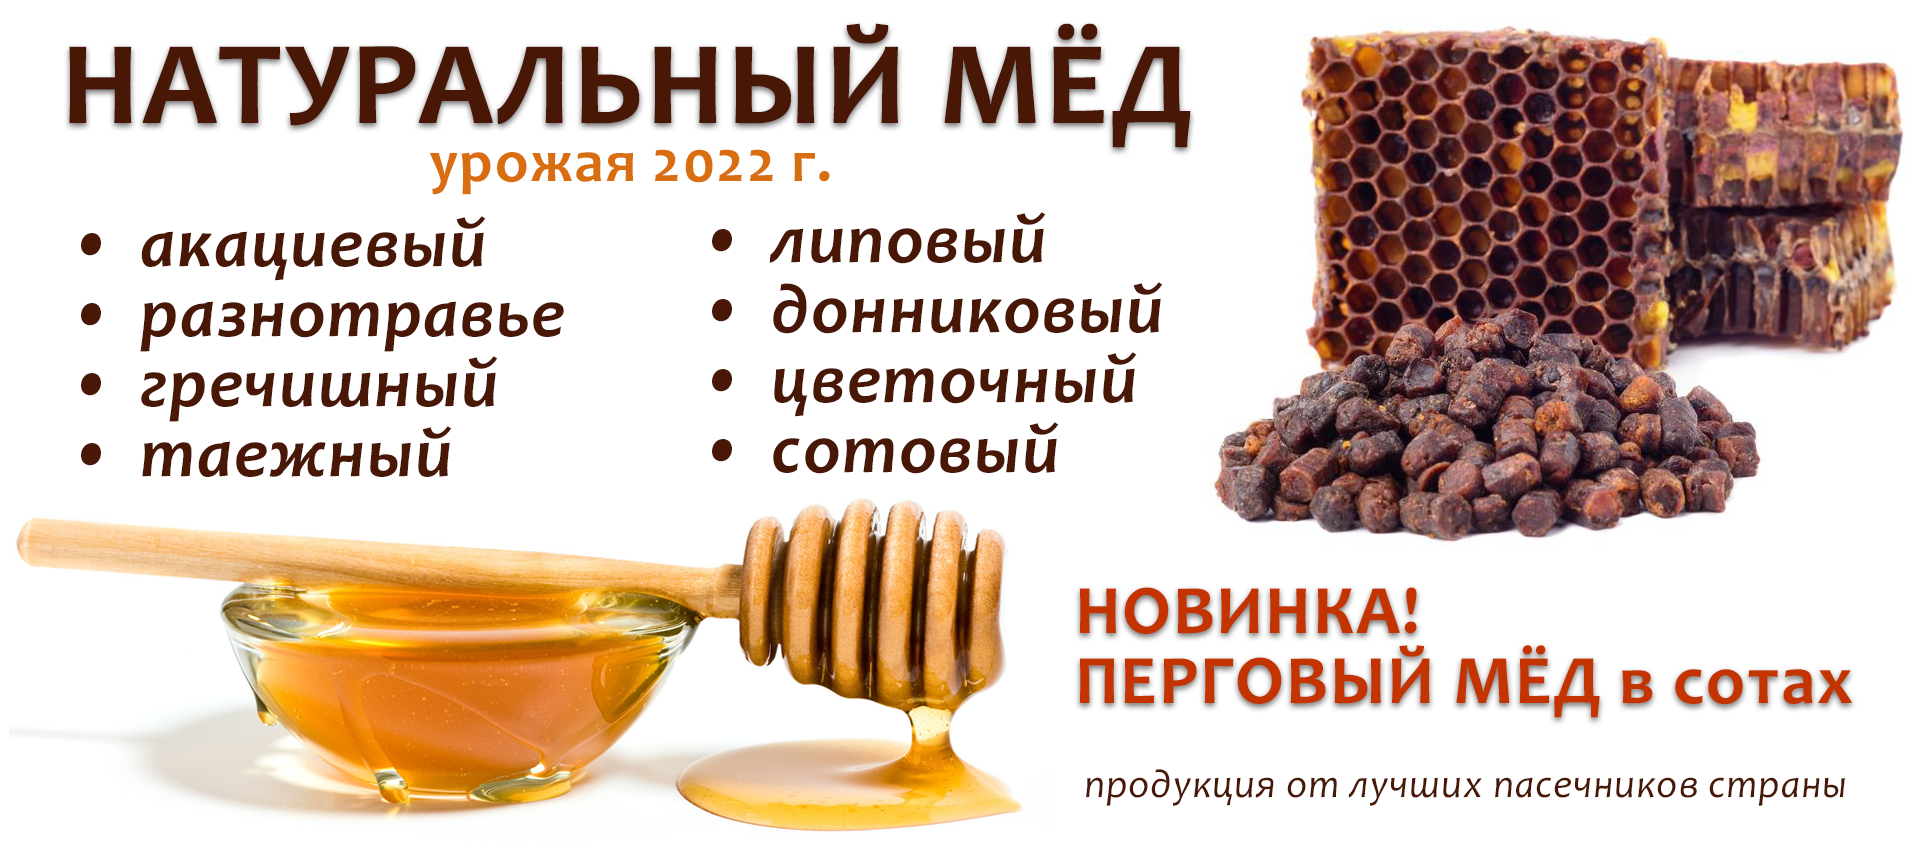 мед урожая 2022 новый